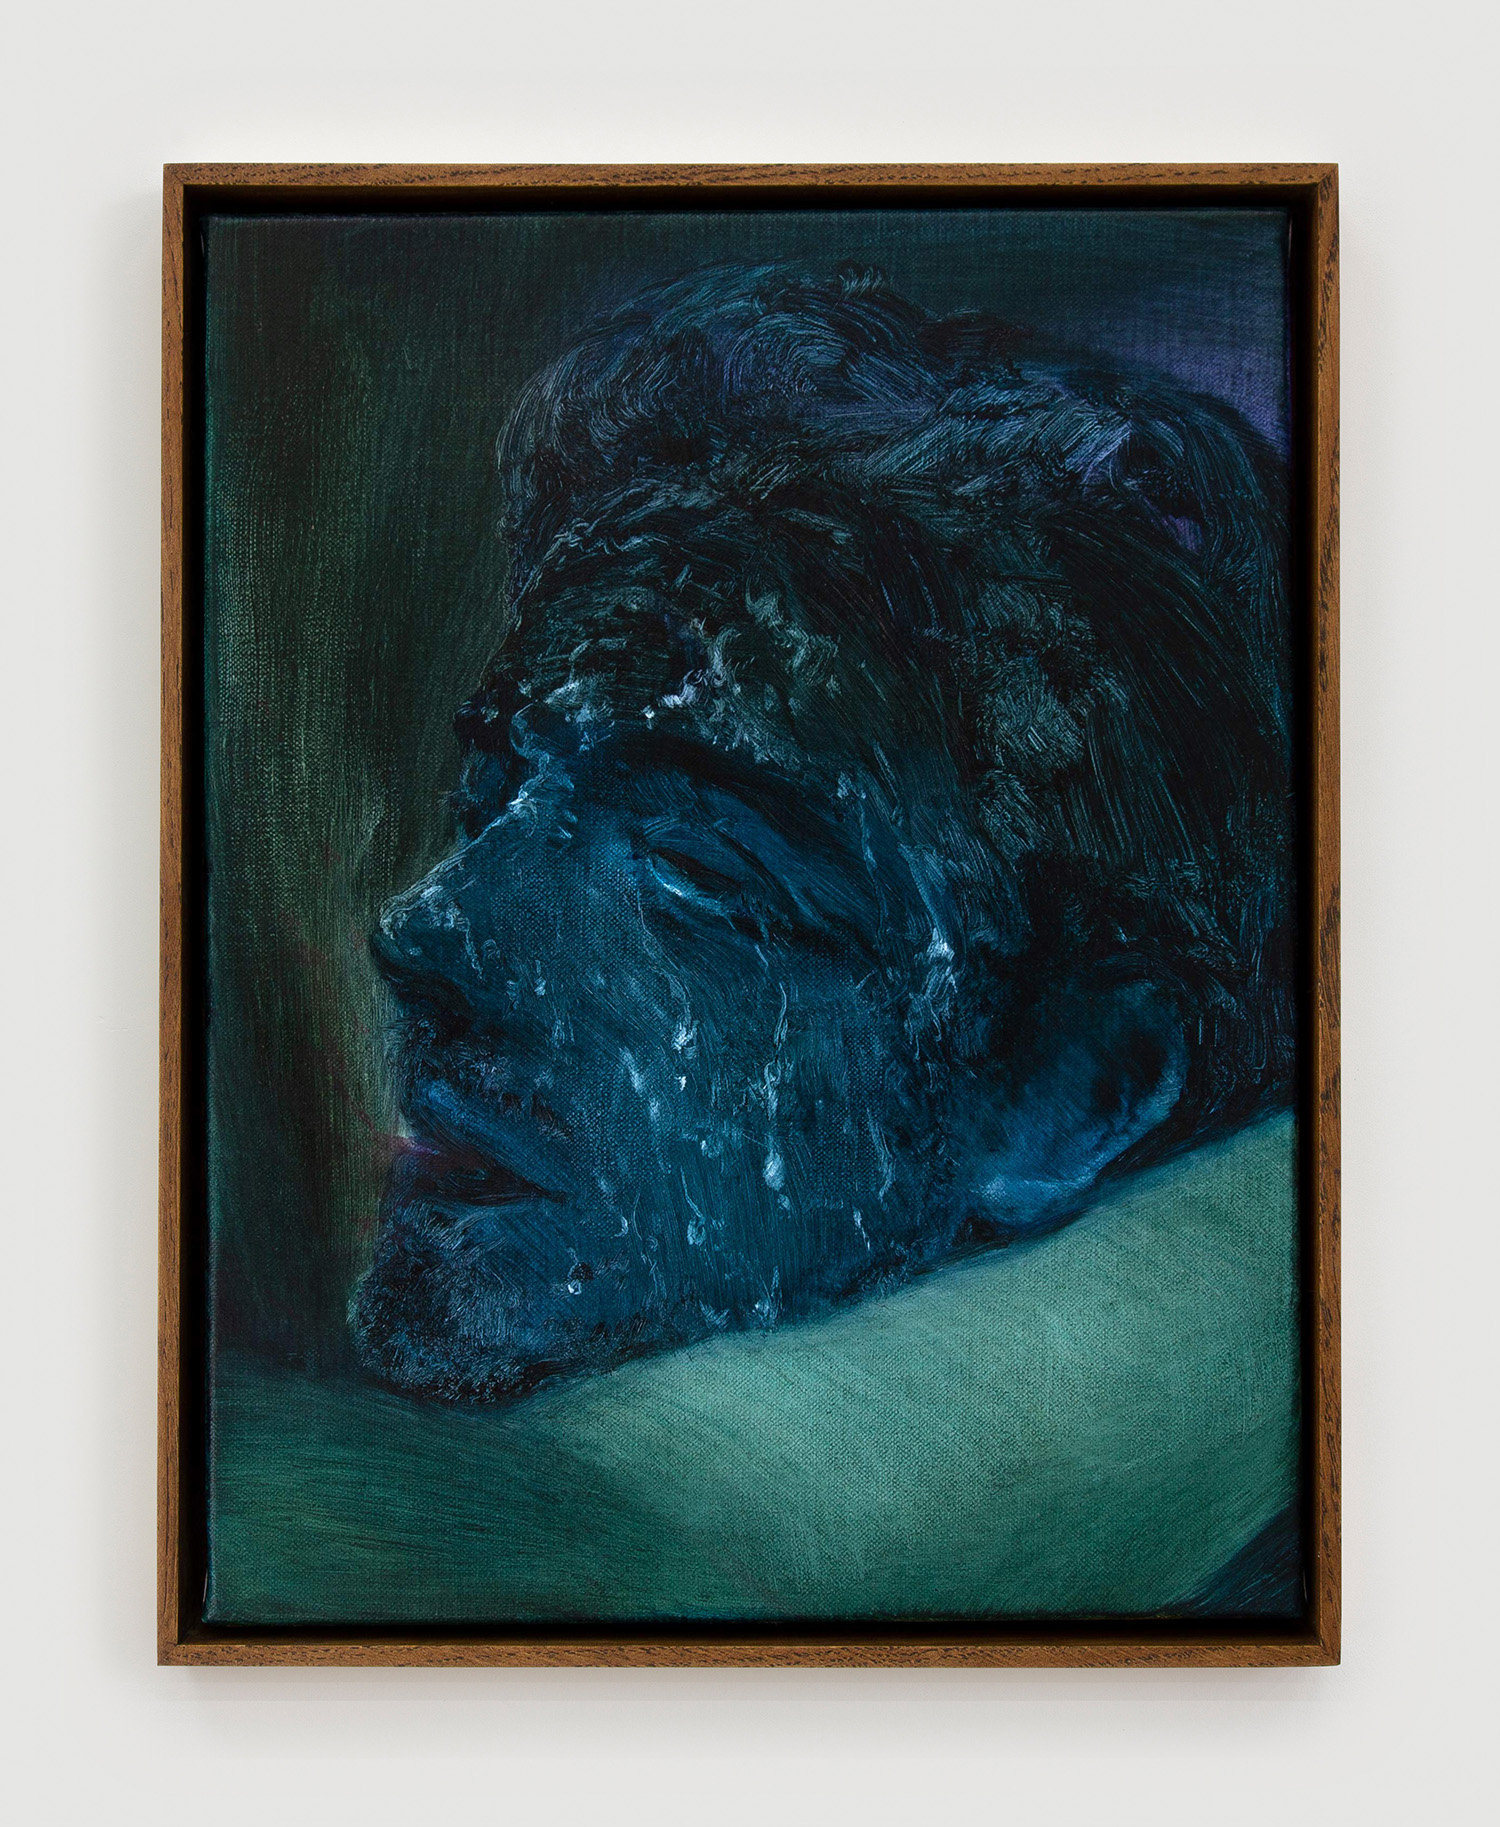 Xie Lei, Inside, 2022, oil on canvas, 35 x 27 cm, 13 3/4 x 10 5/8 in